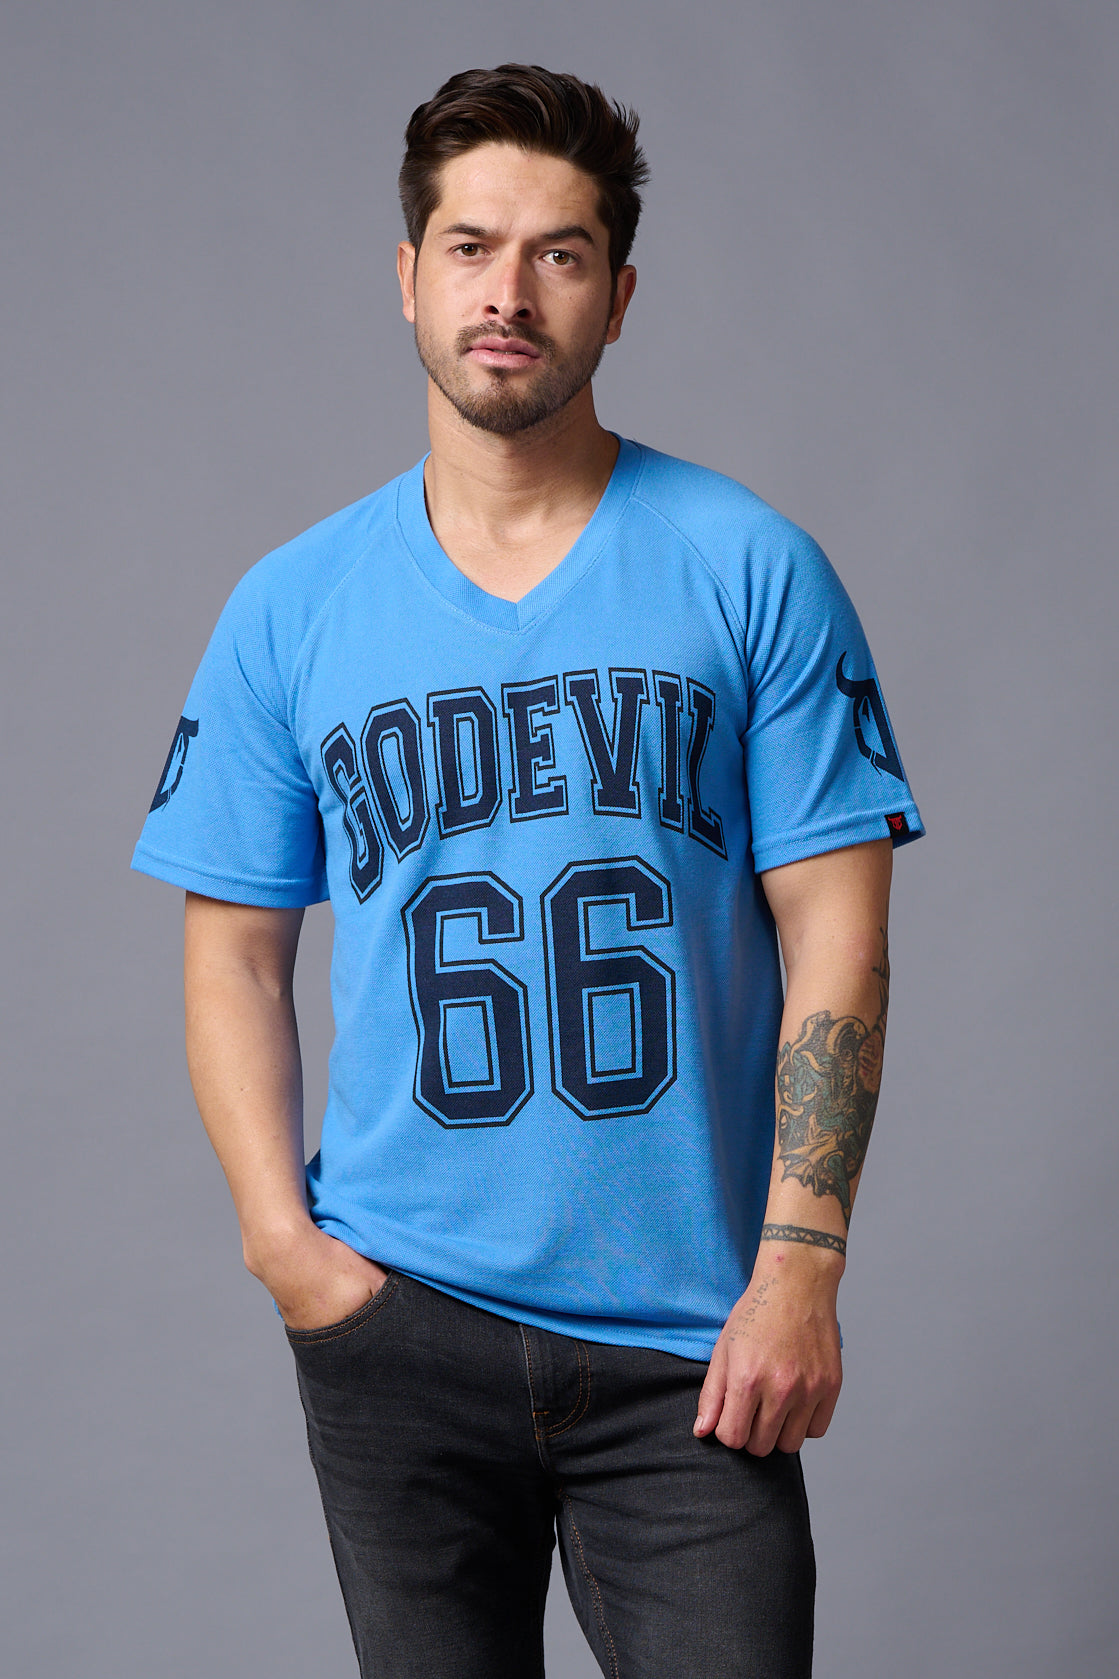 Go Devil 66 Printed V-Neck Blue Cotton Oversized T-Shirt for Men